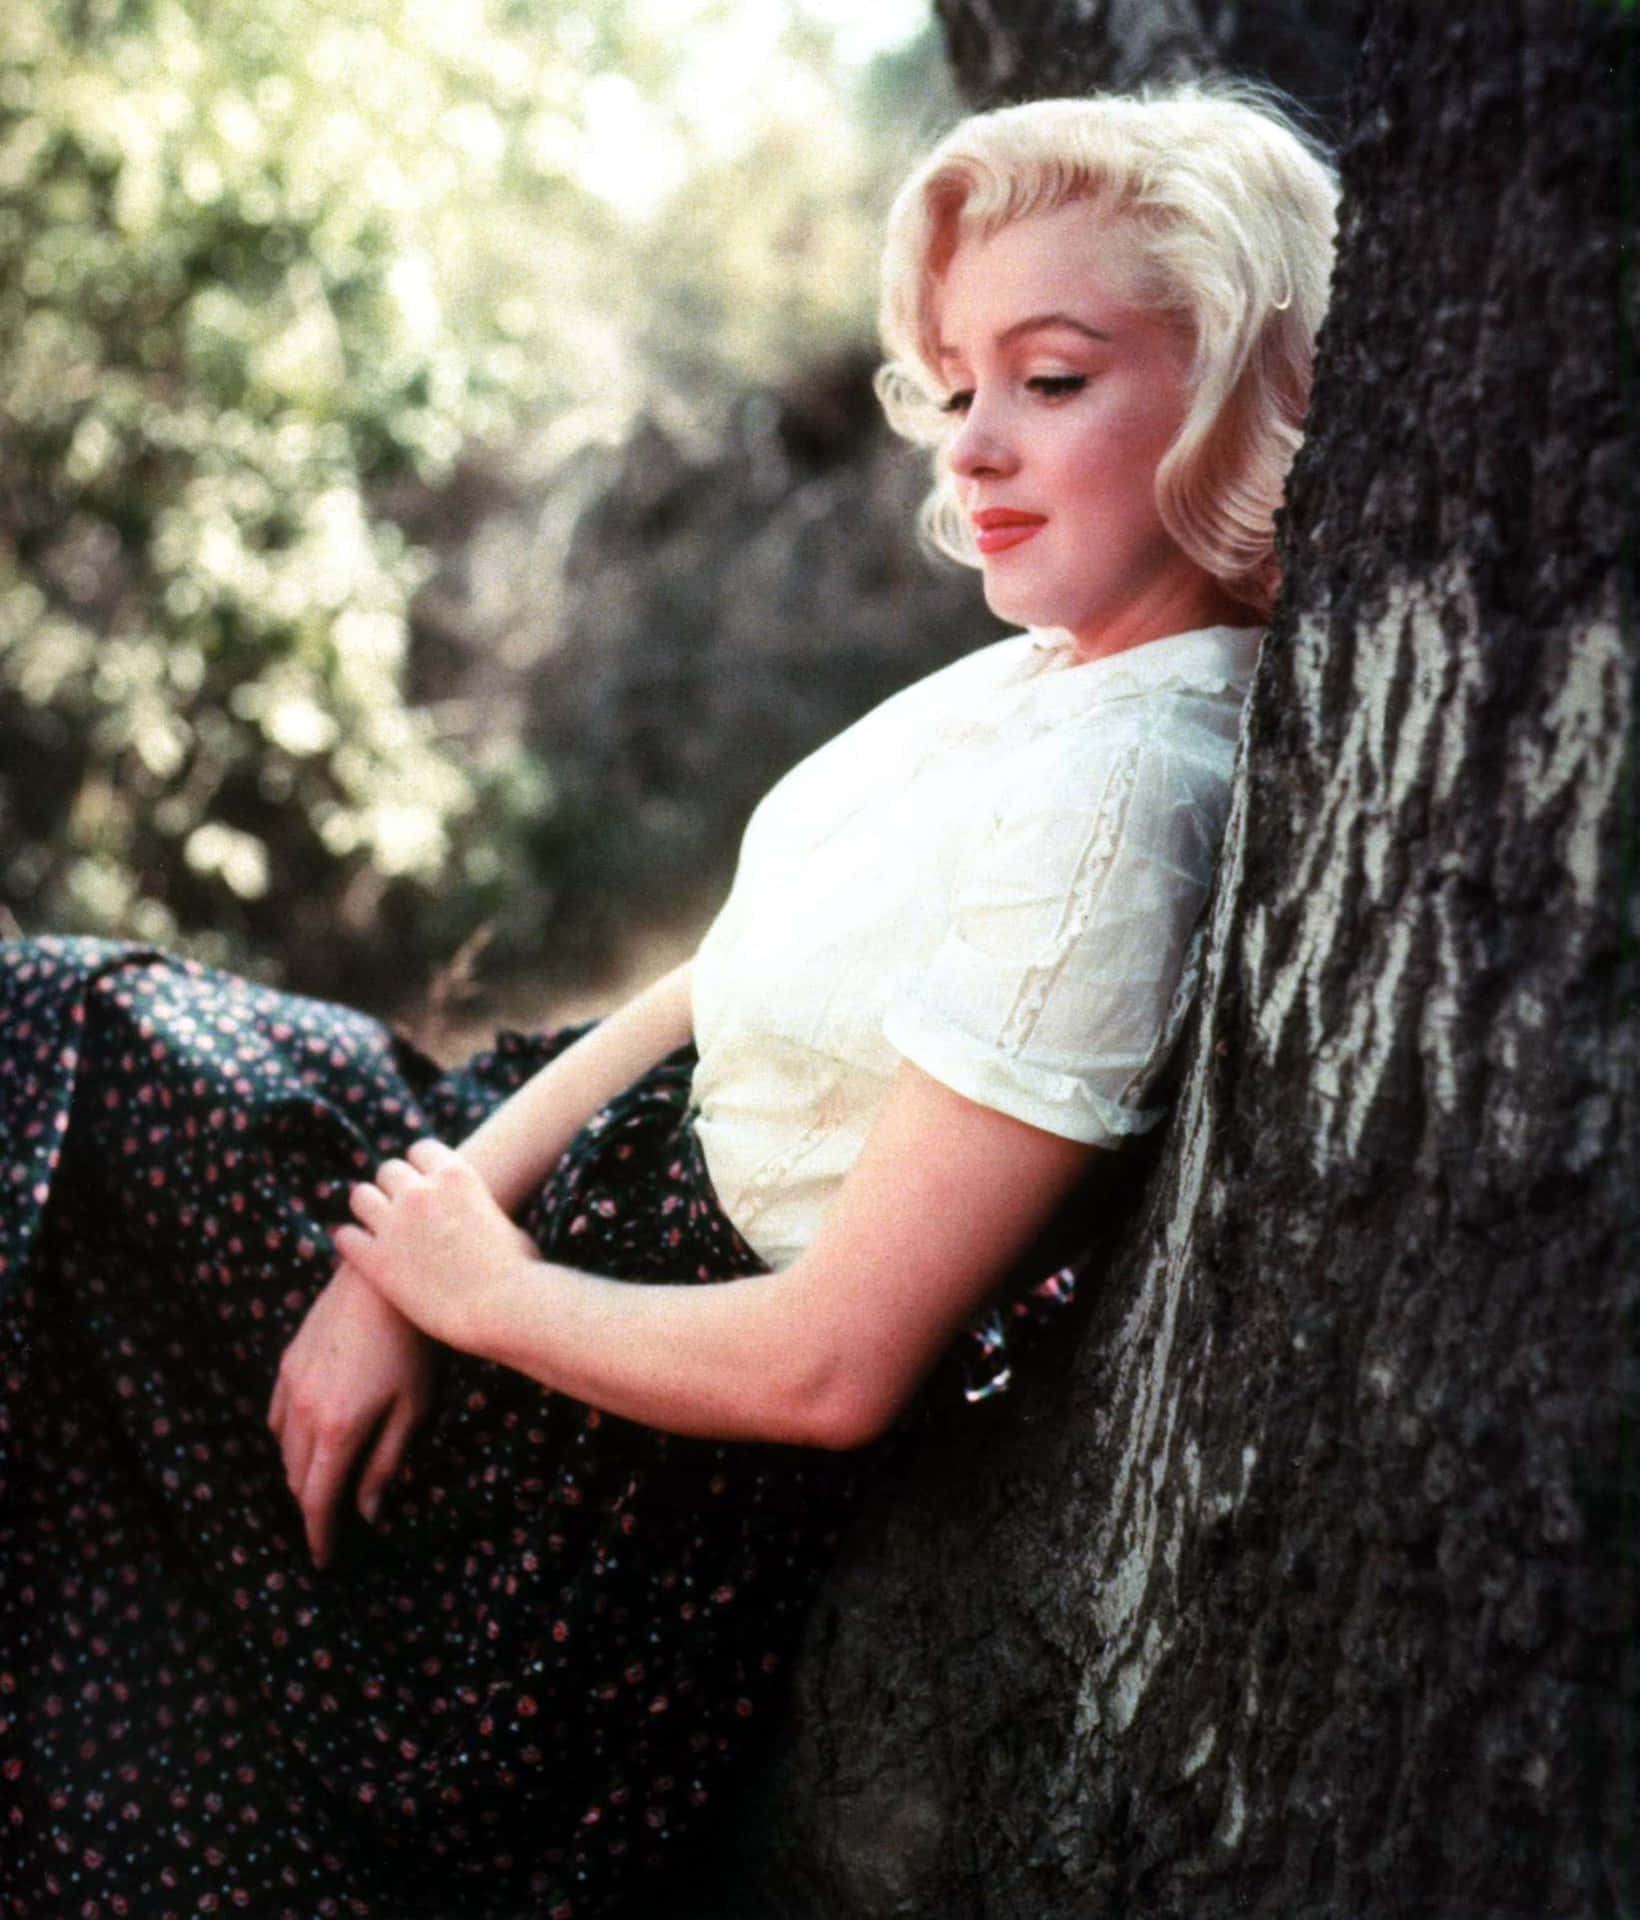 Dieikonische Marilyn Monroe In All Ihrer Strahlenden Pracht